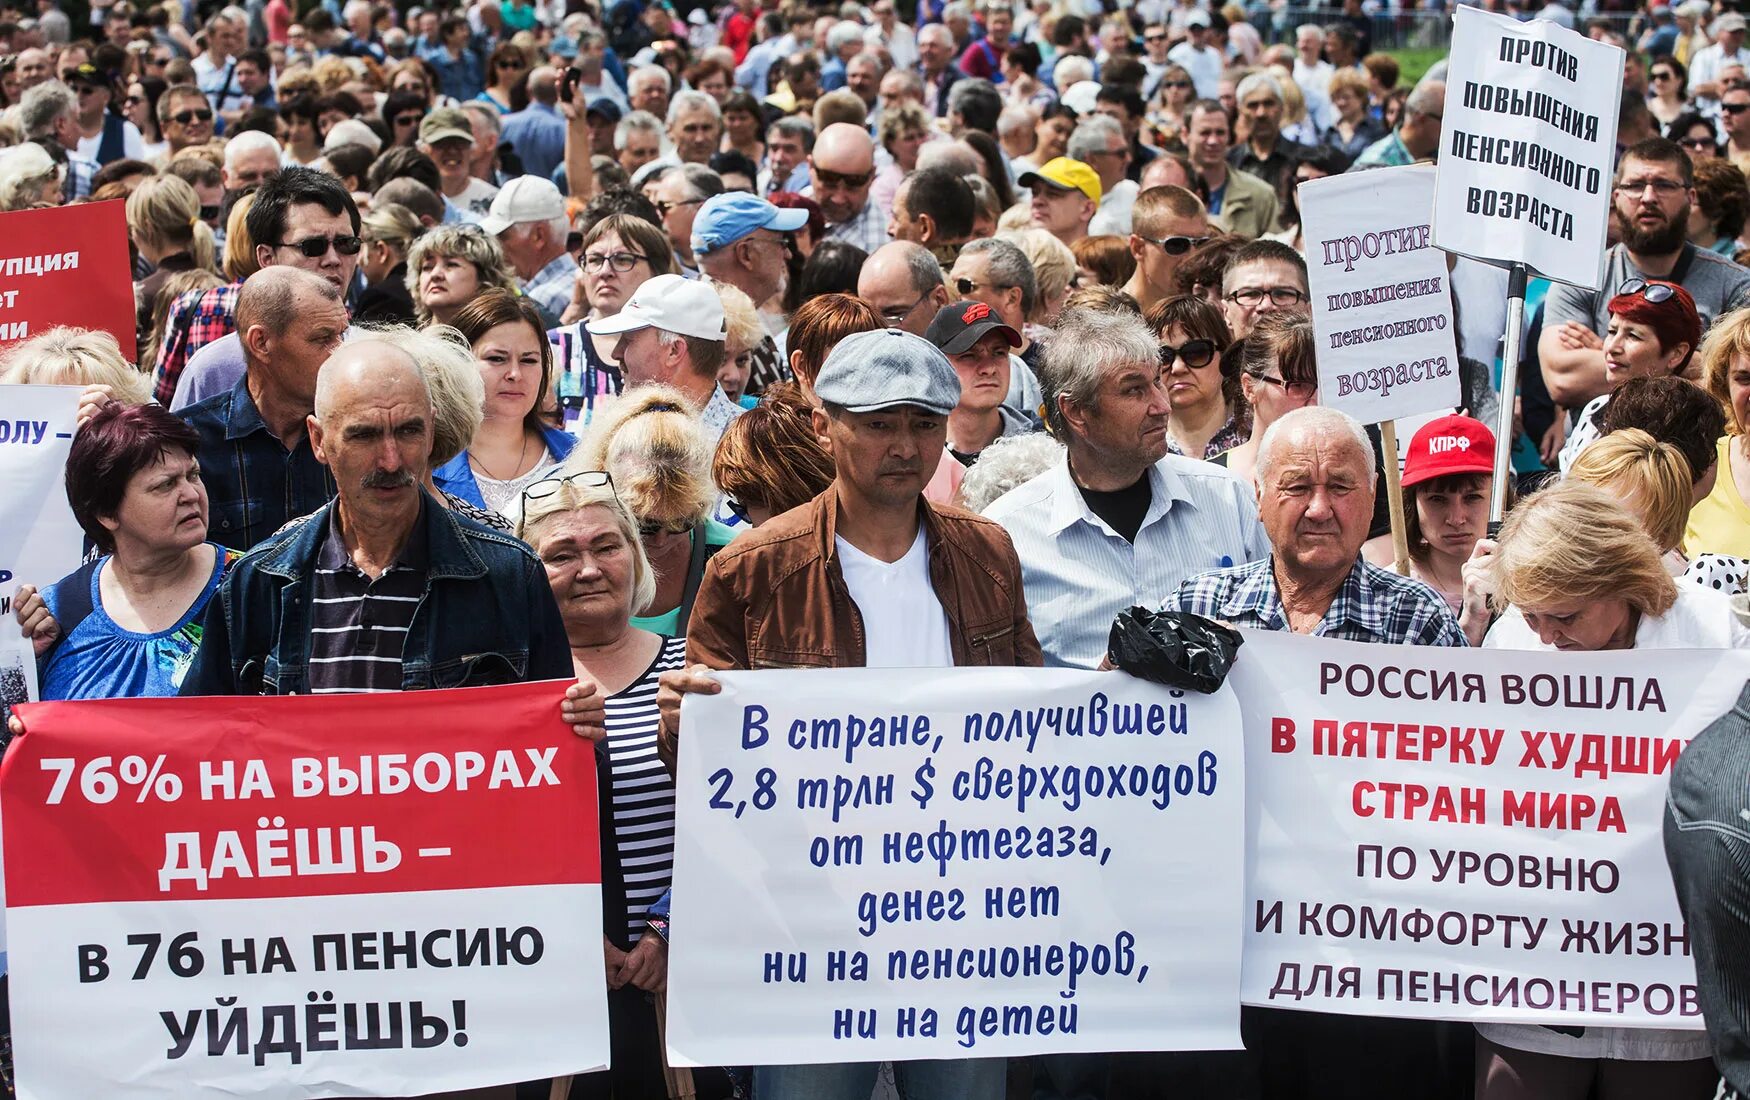 Пенсионный возраст новости снизят. Повышение пенсионного возраста. Пенсионная реформа в России. Митинг против повышения пенсионного возраста. Повышение пенсионного возраста реформа.